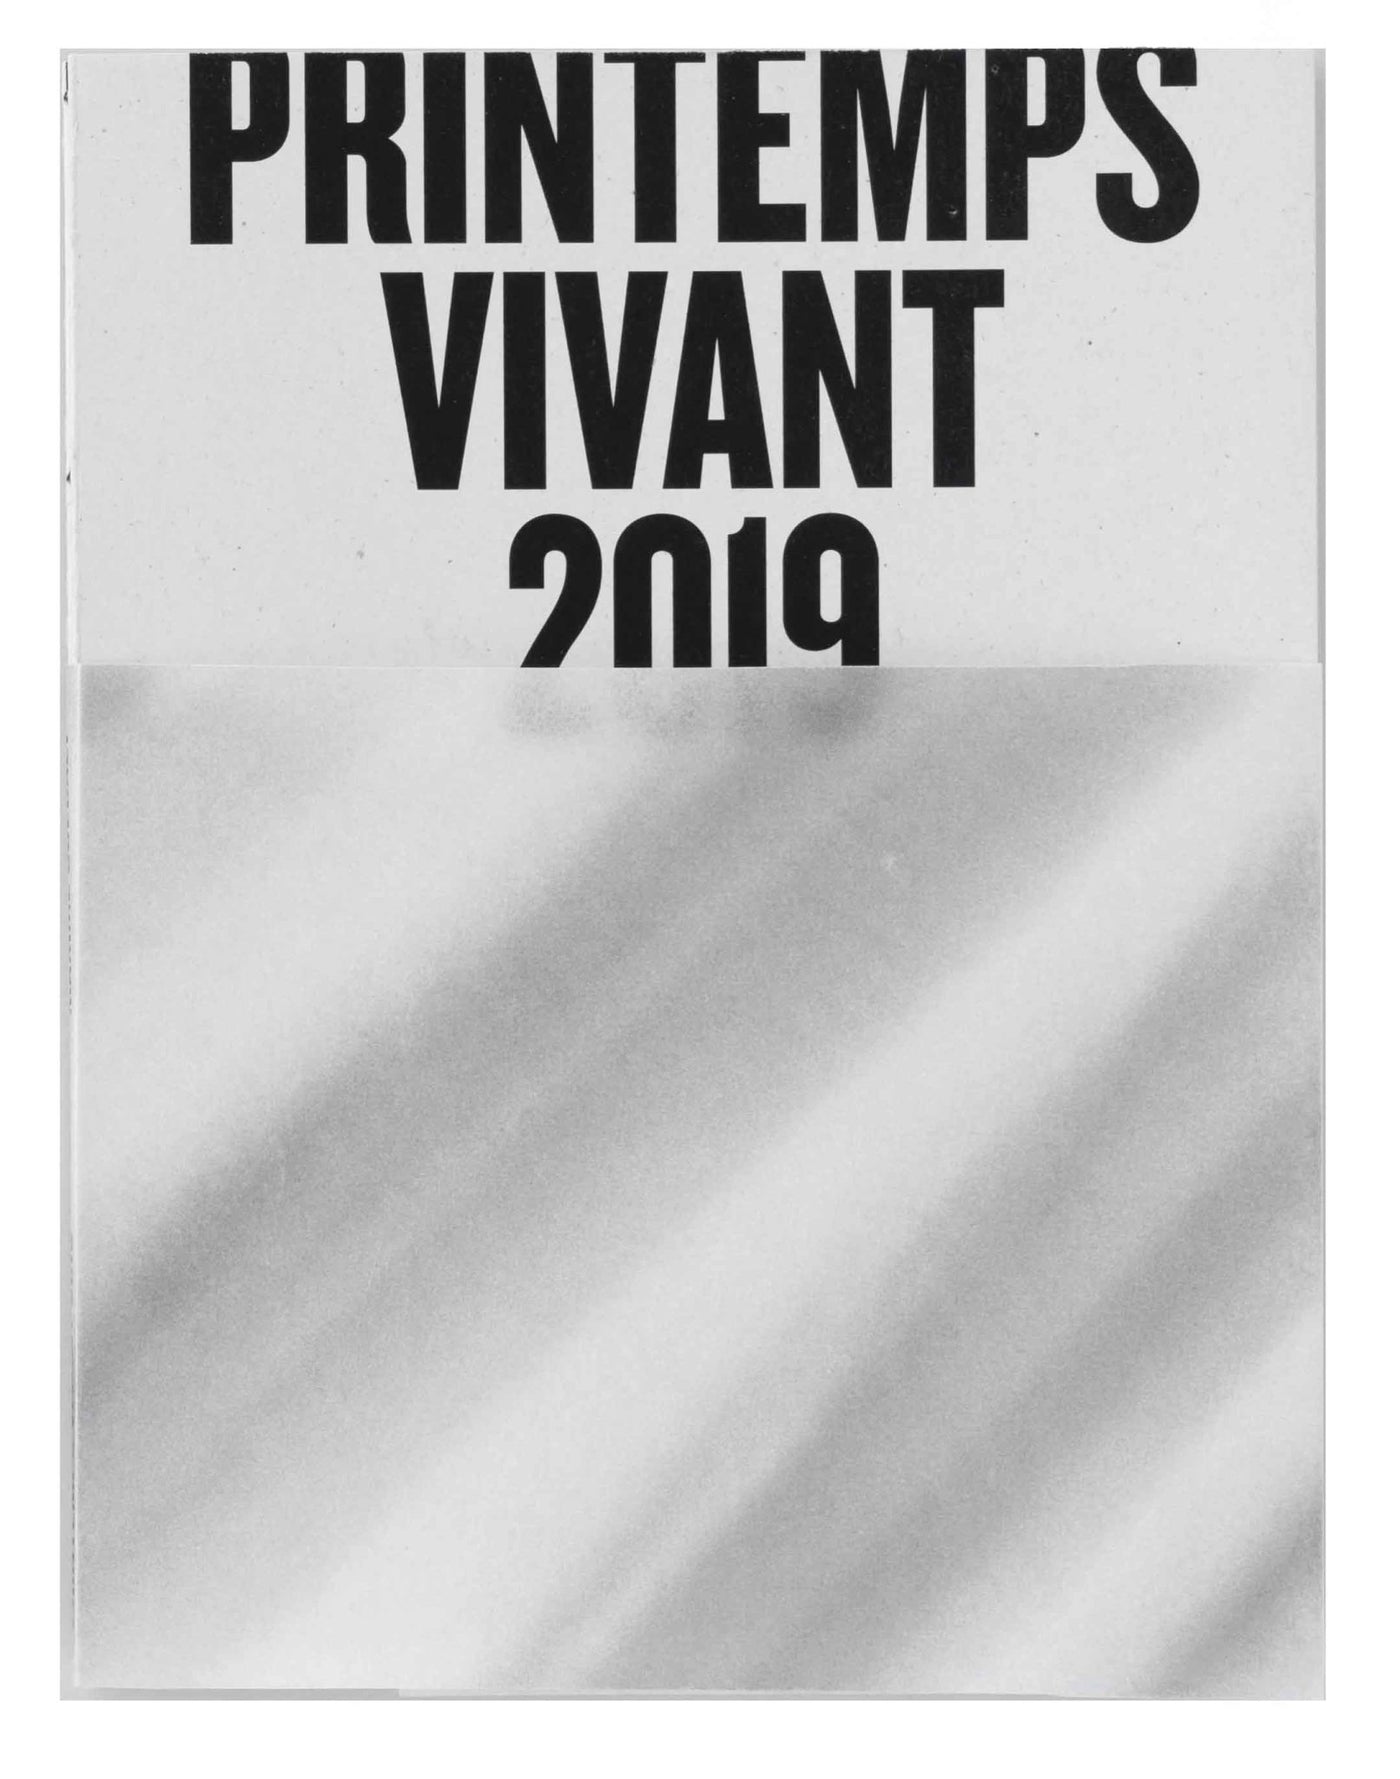 Printemps vivant by Maxime Guedaly - Tipi bookshop